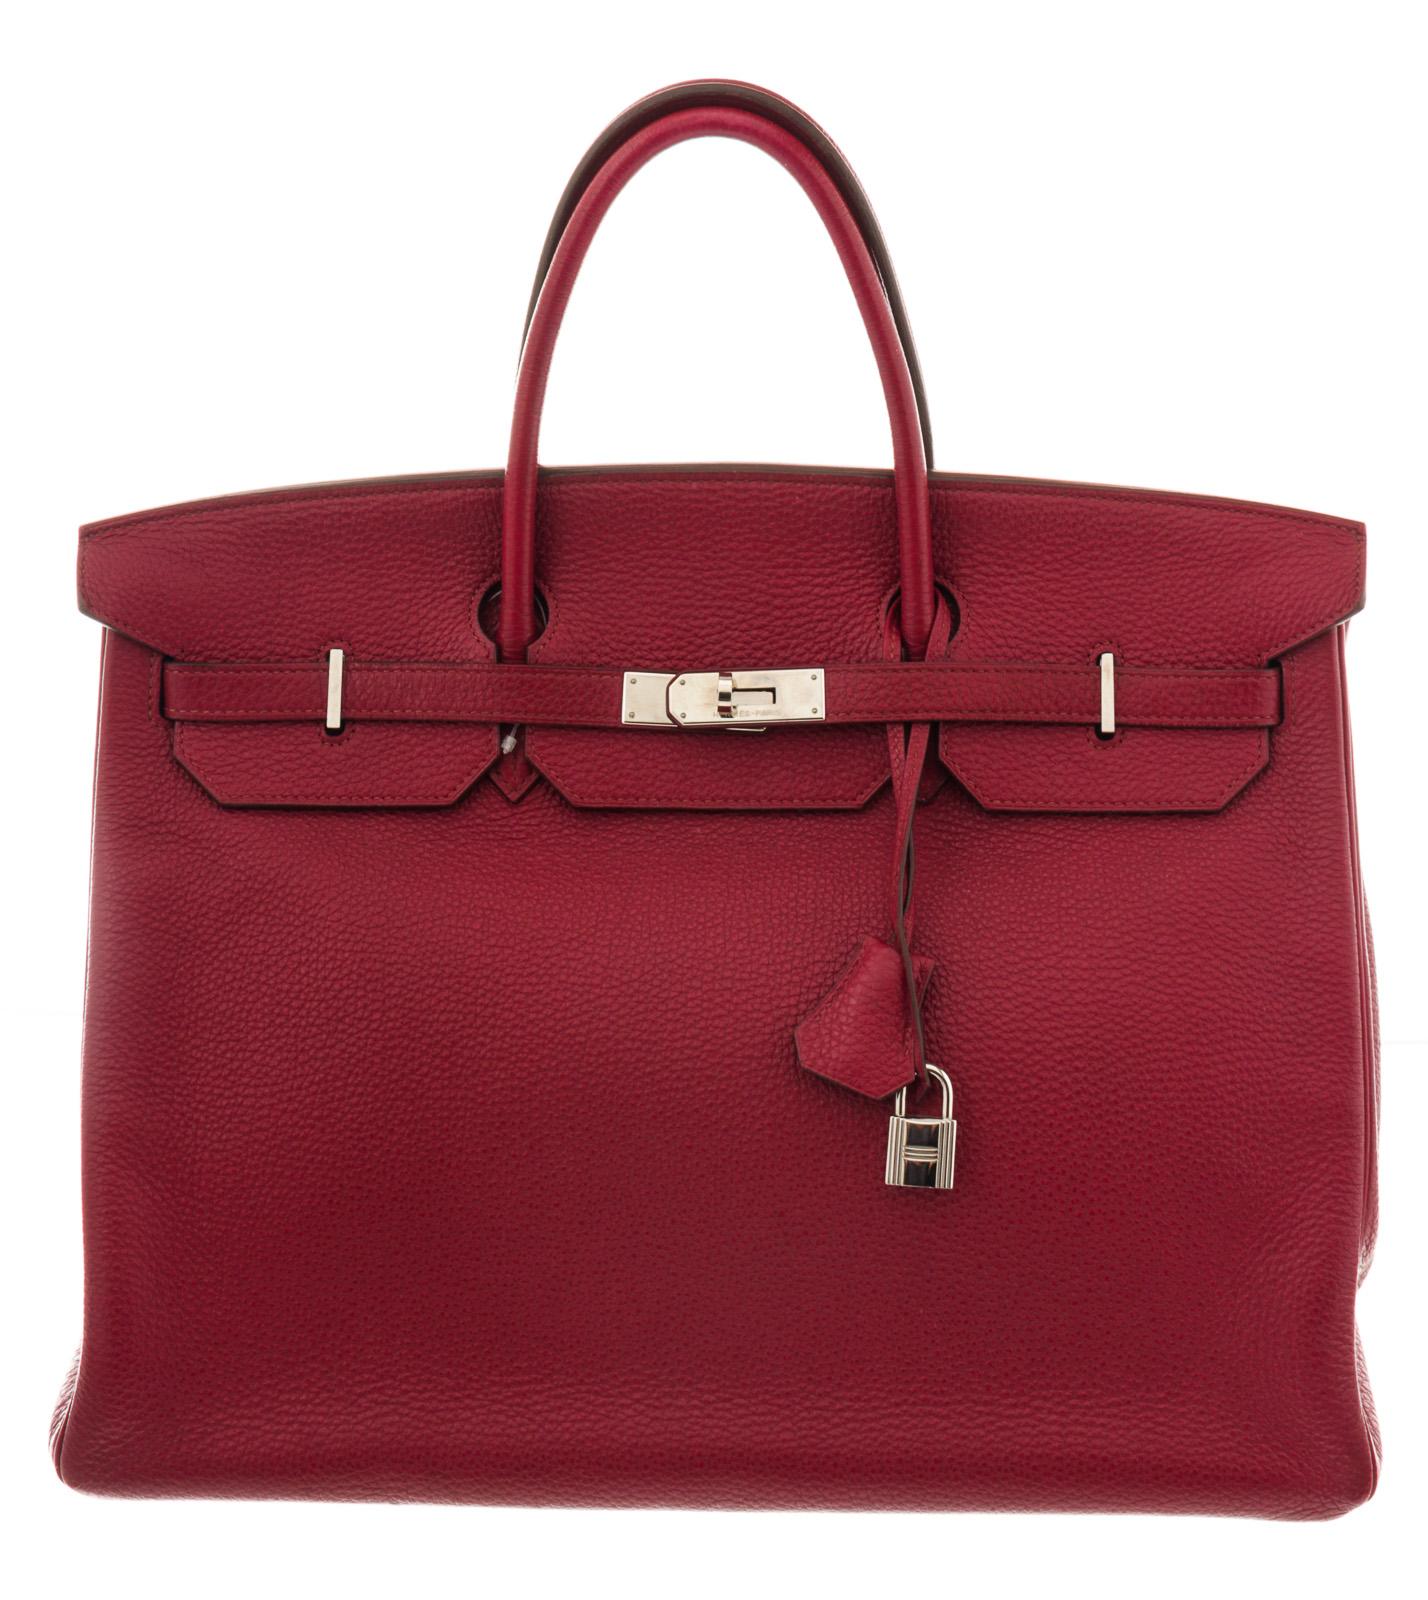 burgundy satchel bag